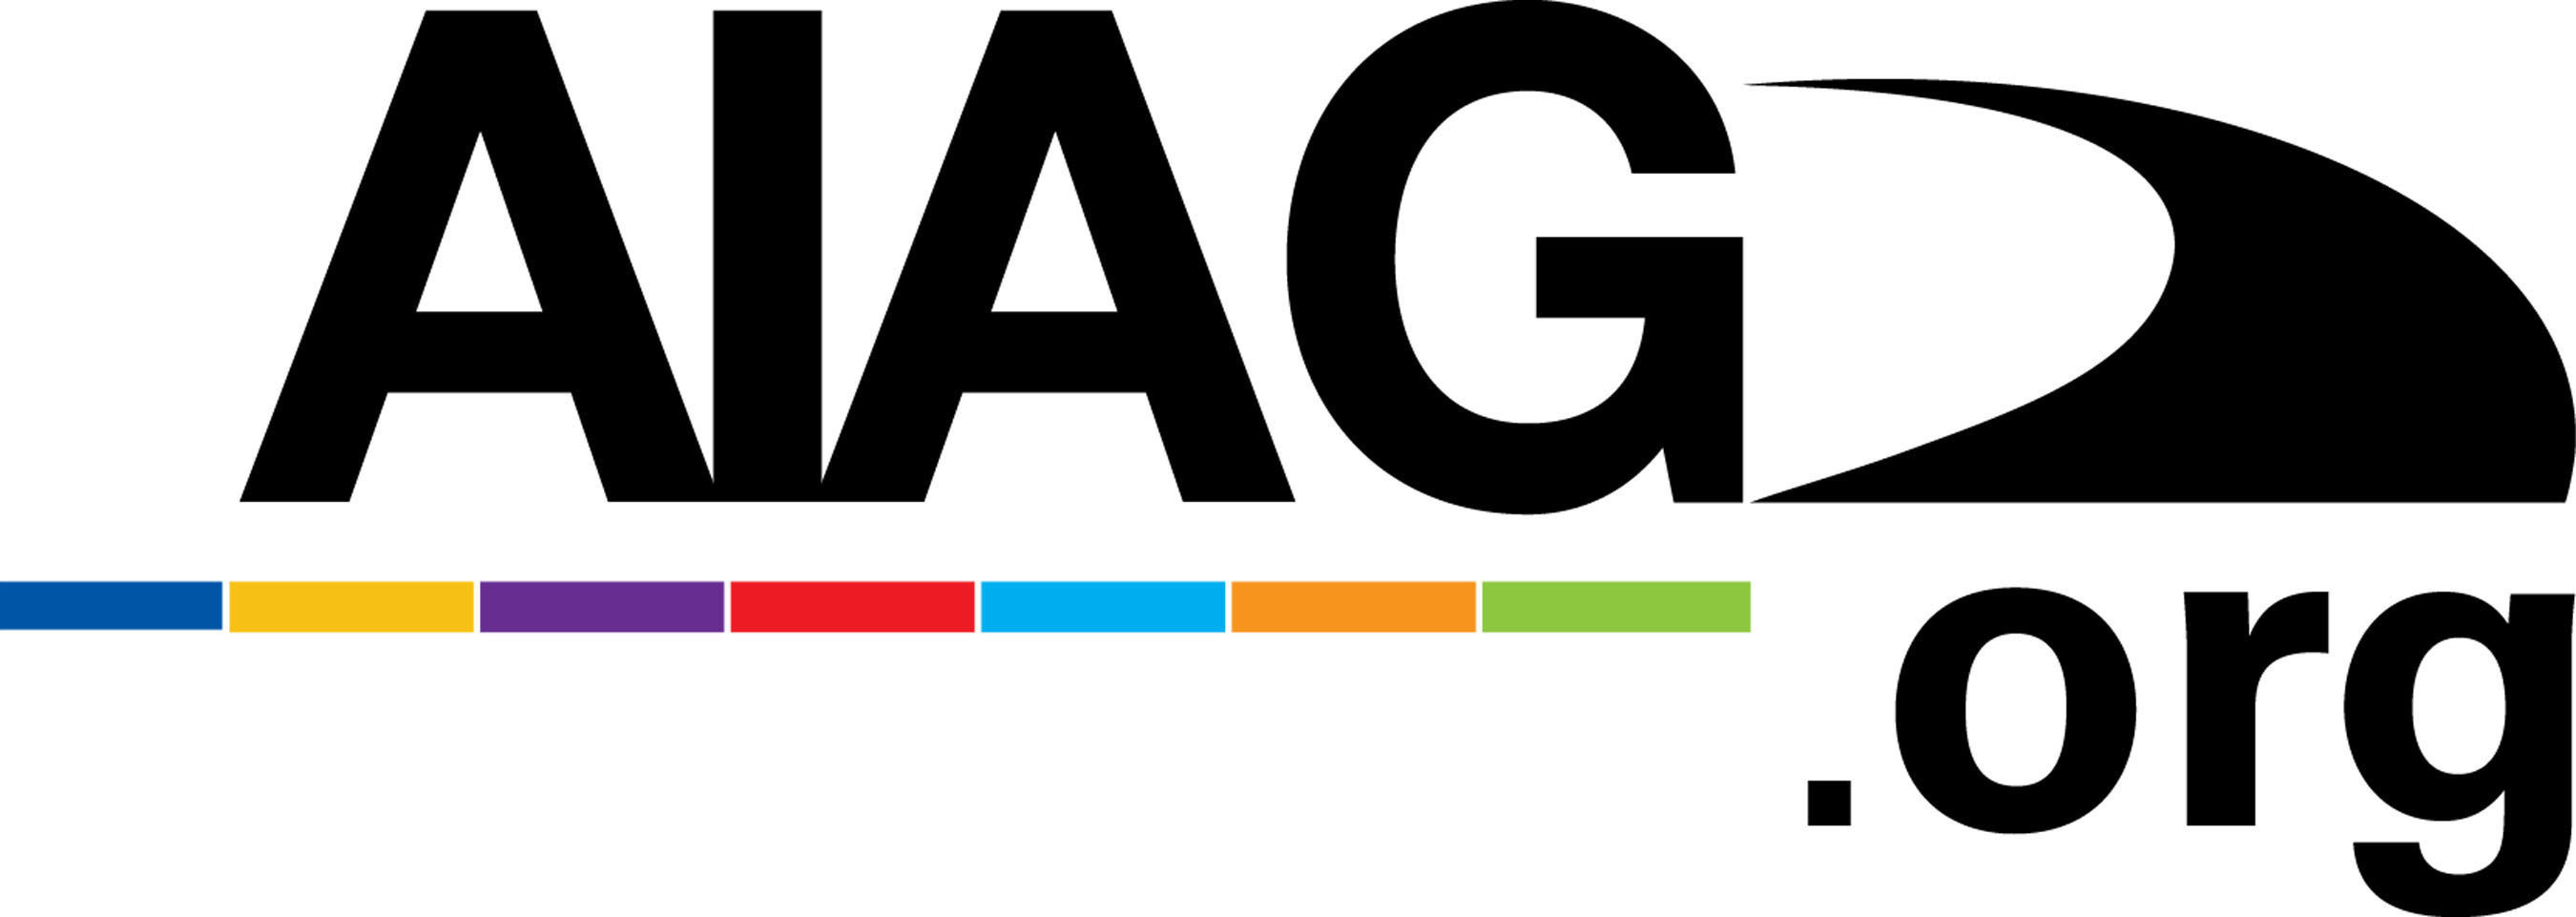 AIAG logo. (PRNewsFoto/AIAG)